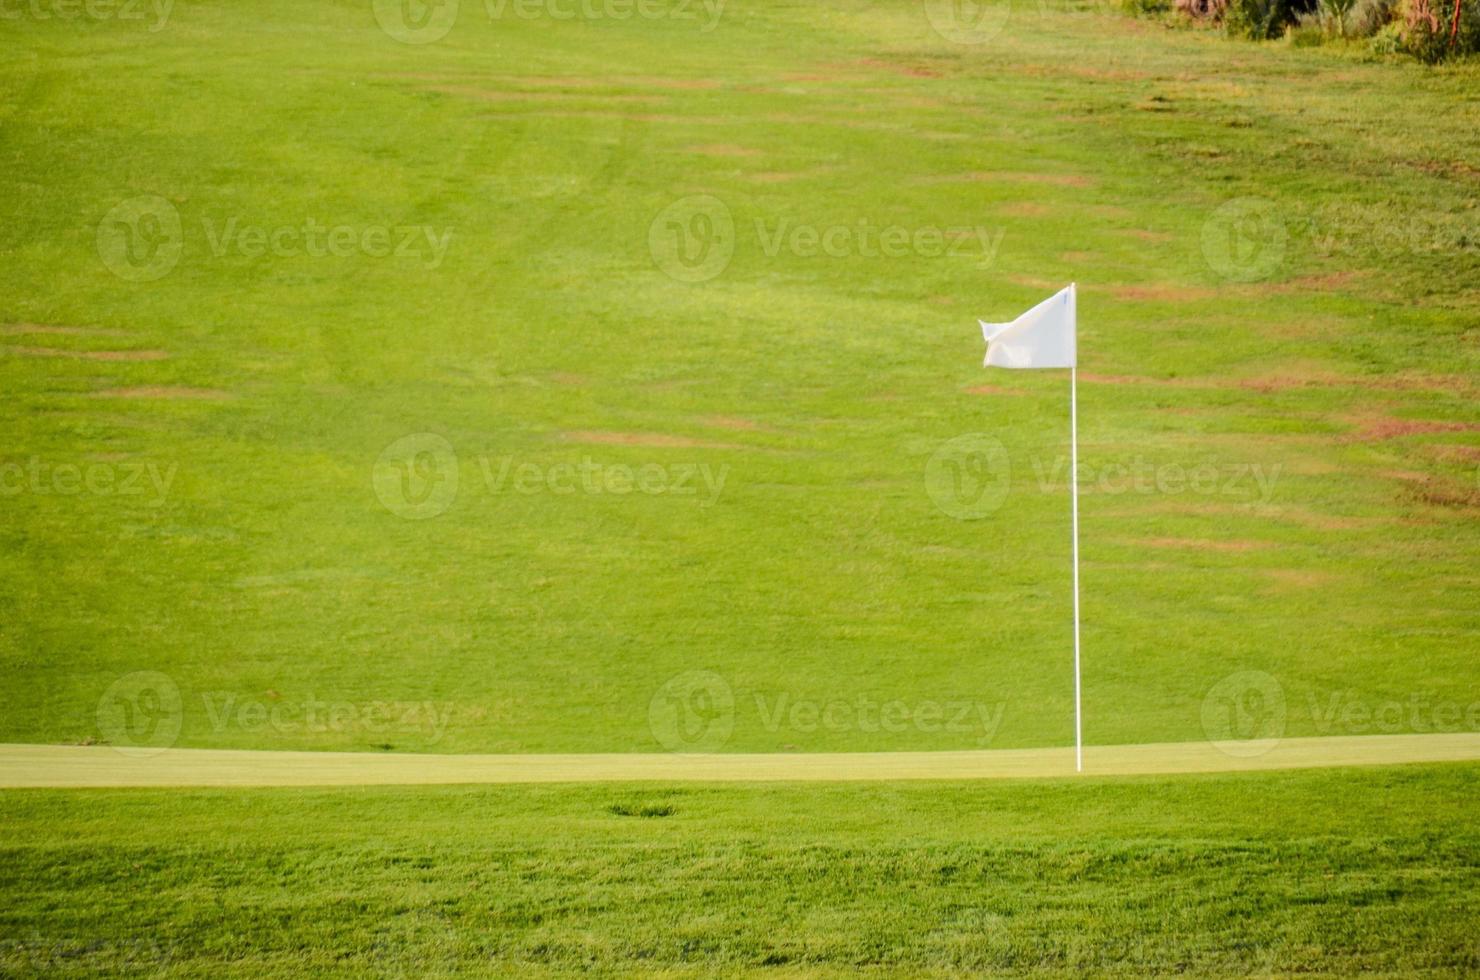 Golf course landscape photo